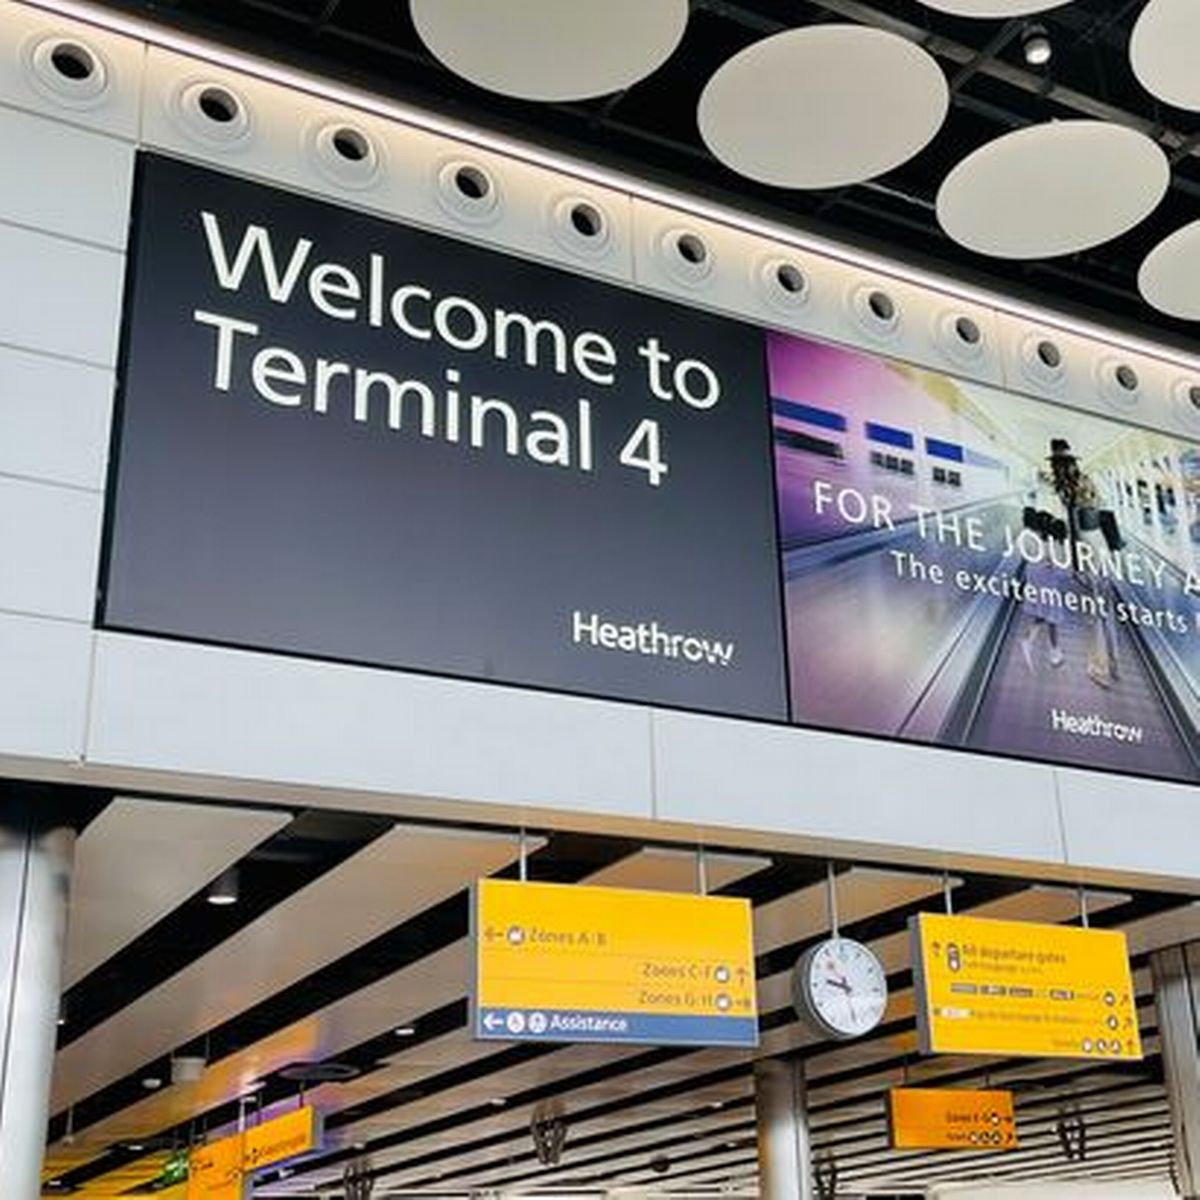 Heathrow Terminal 4 